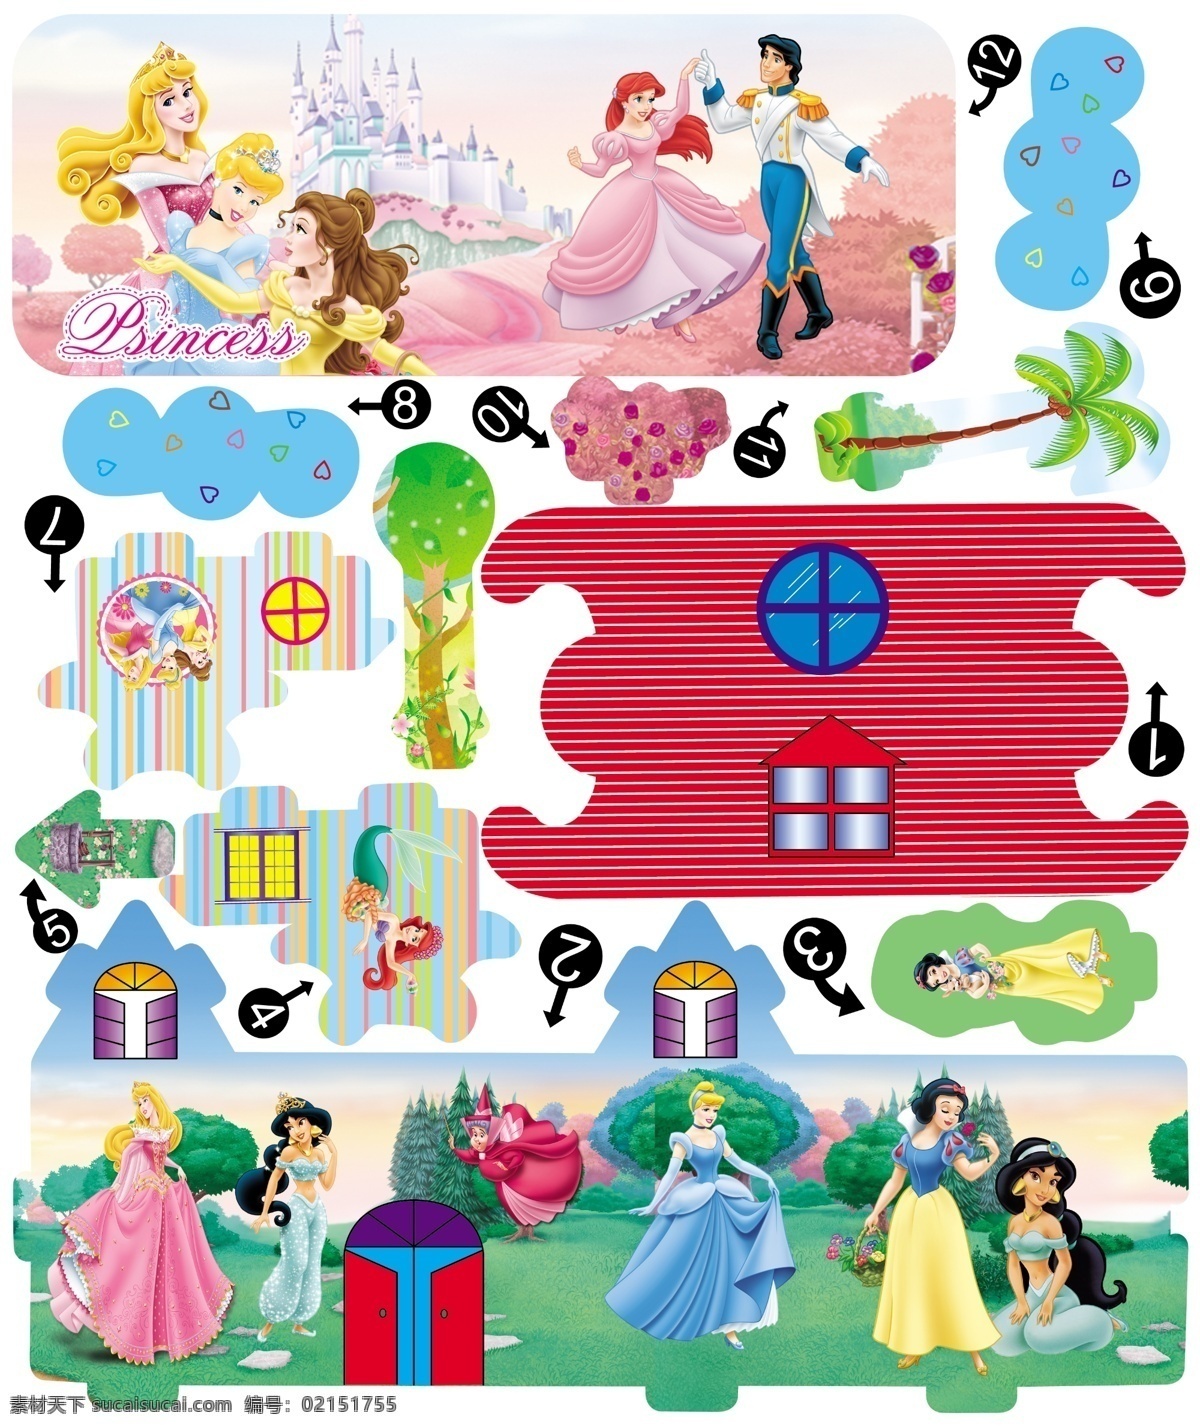 公主拼图 迪士尼 公主 白雪公主 睡美人 灰姑娘 印度公主 美女与野兽 王子 公主裙 拼图 广告设计模板 源文件